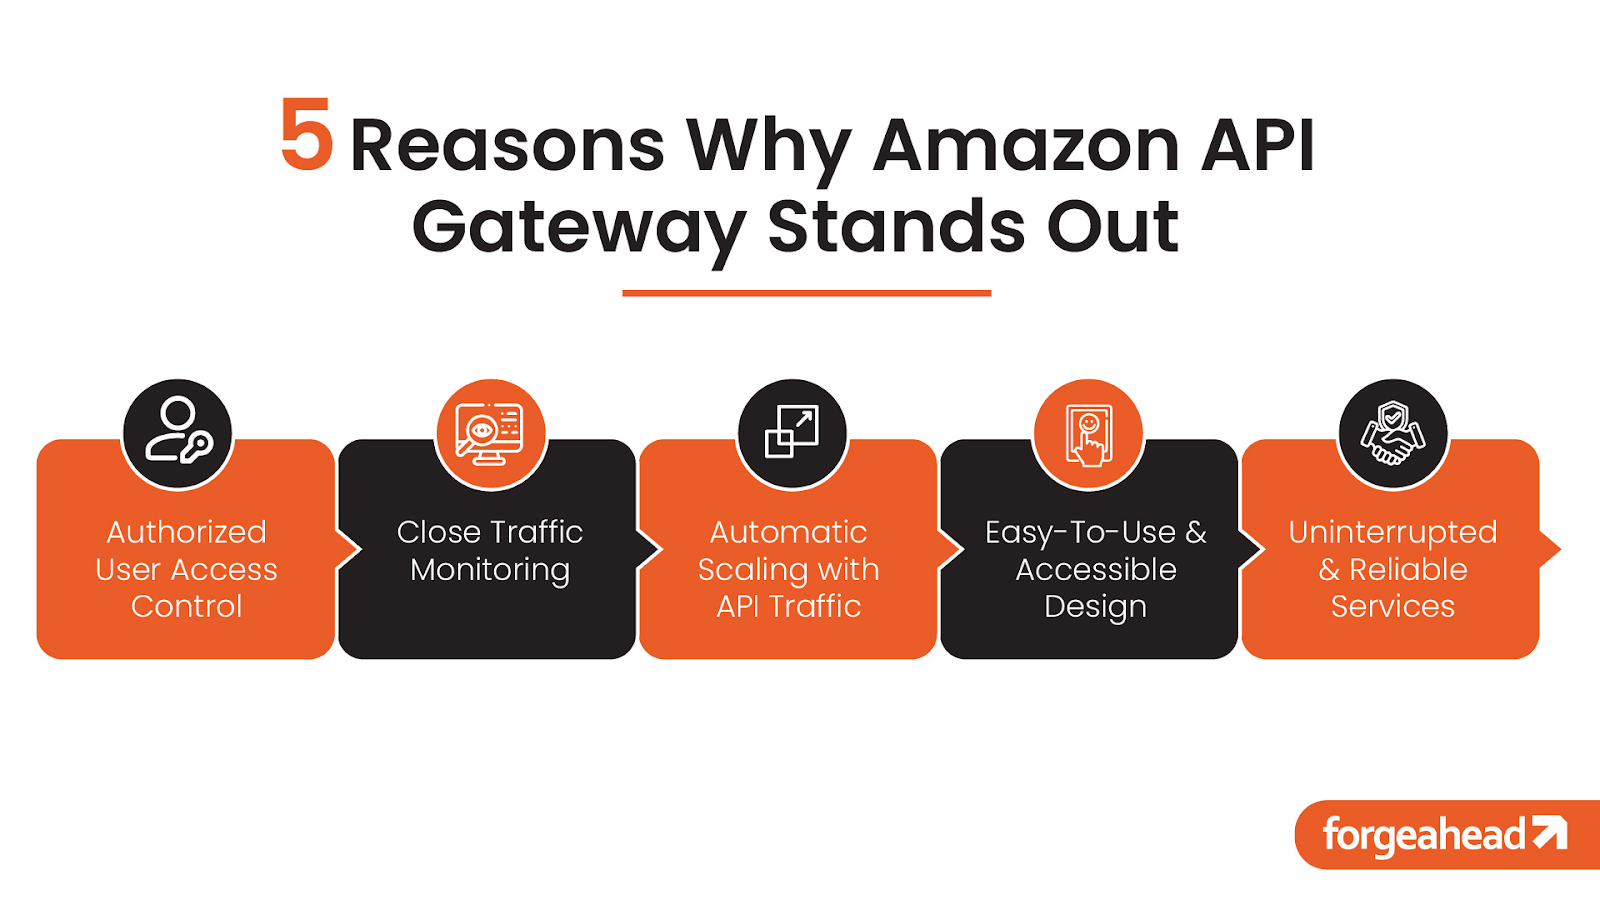 Role of Amazon API Gateway